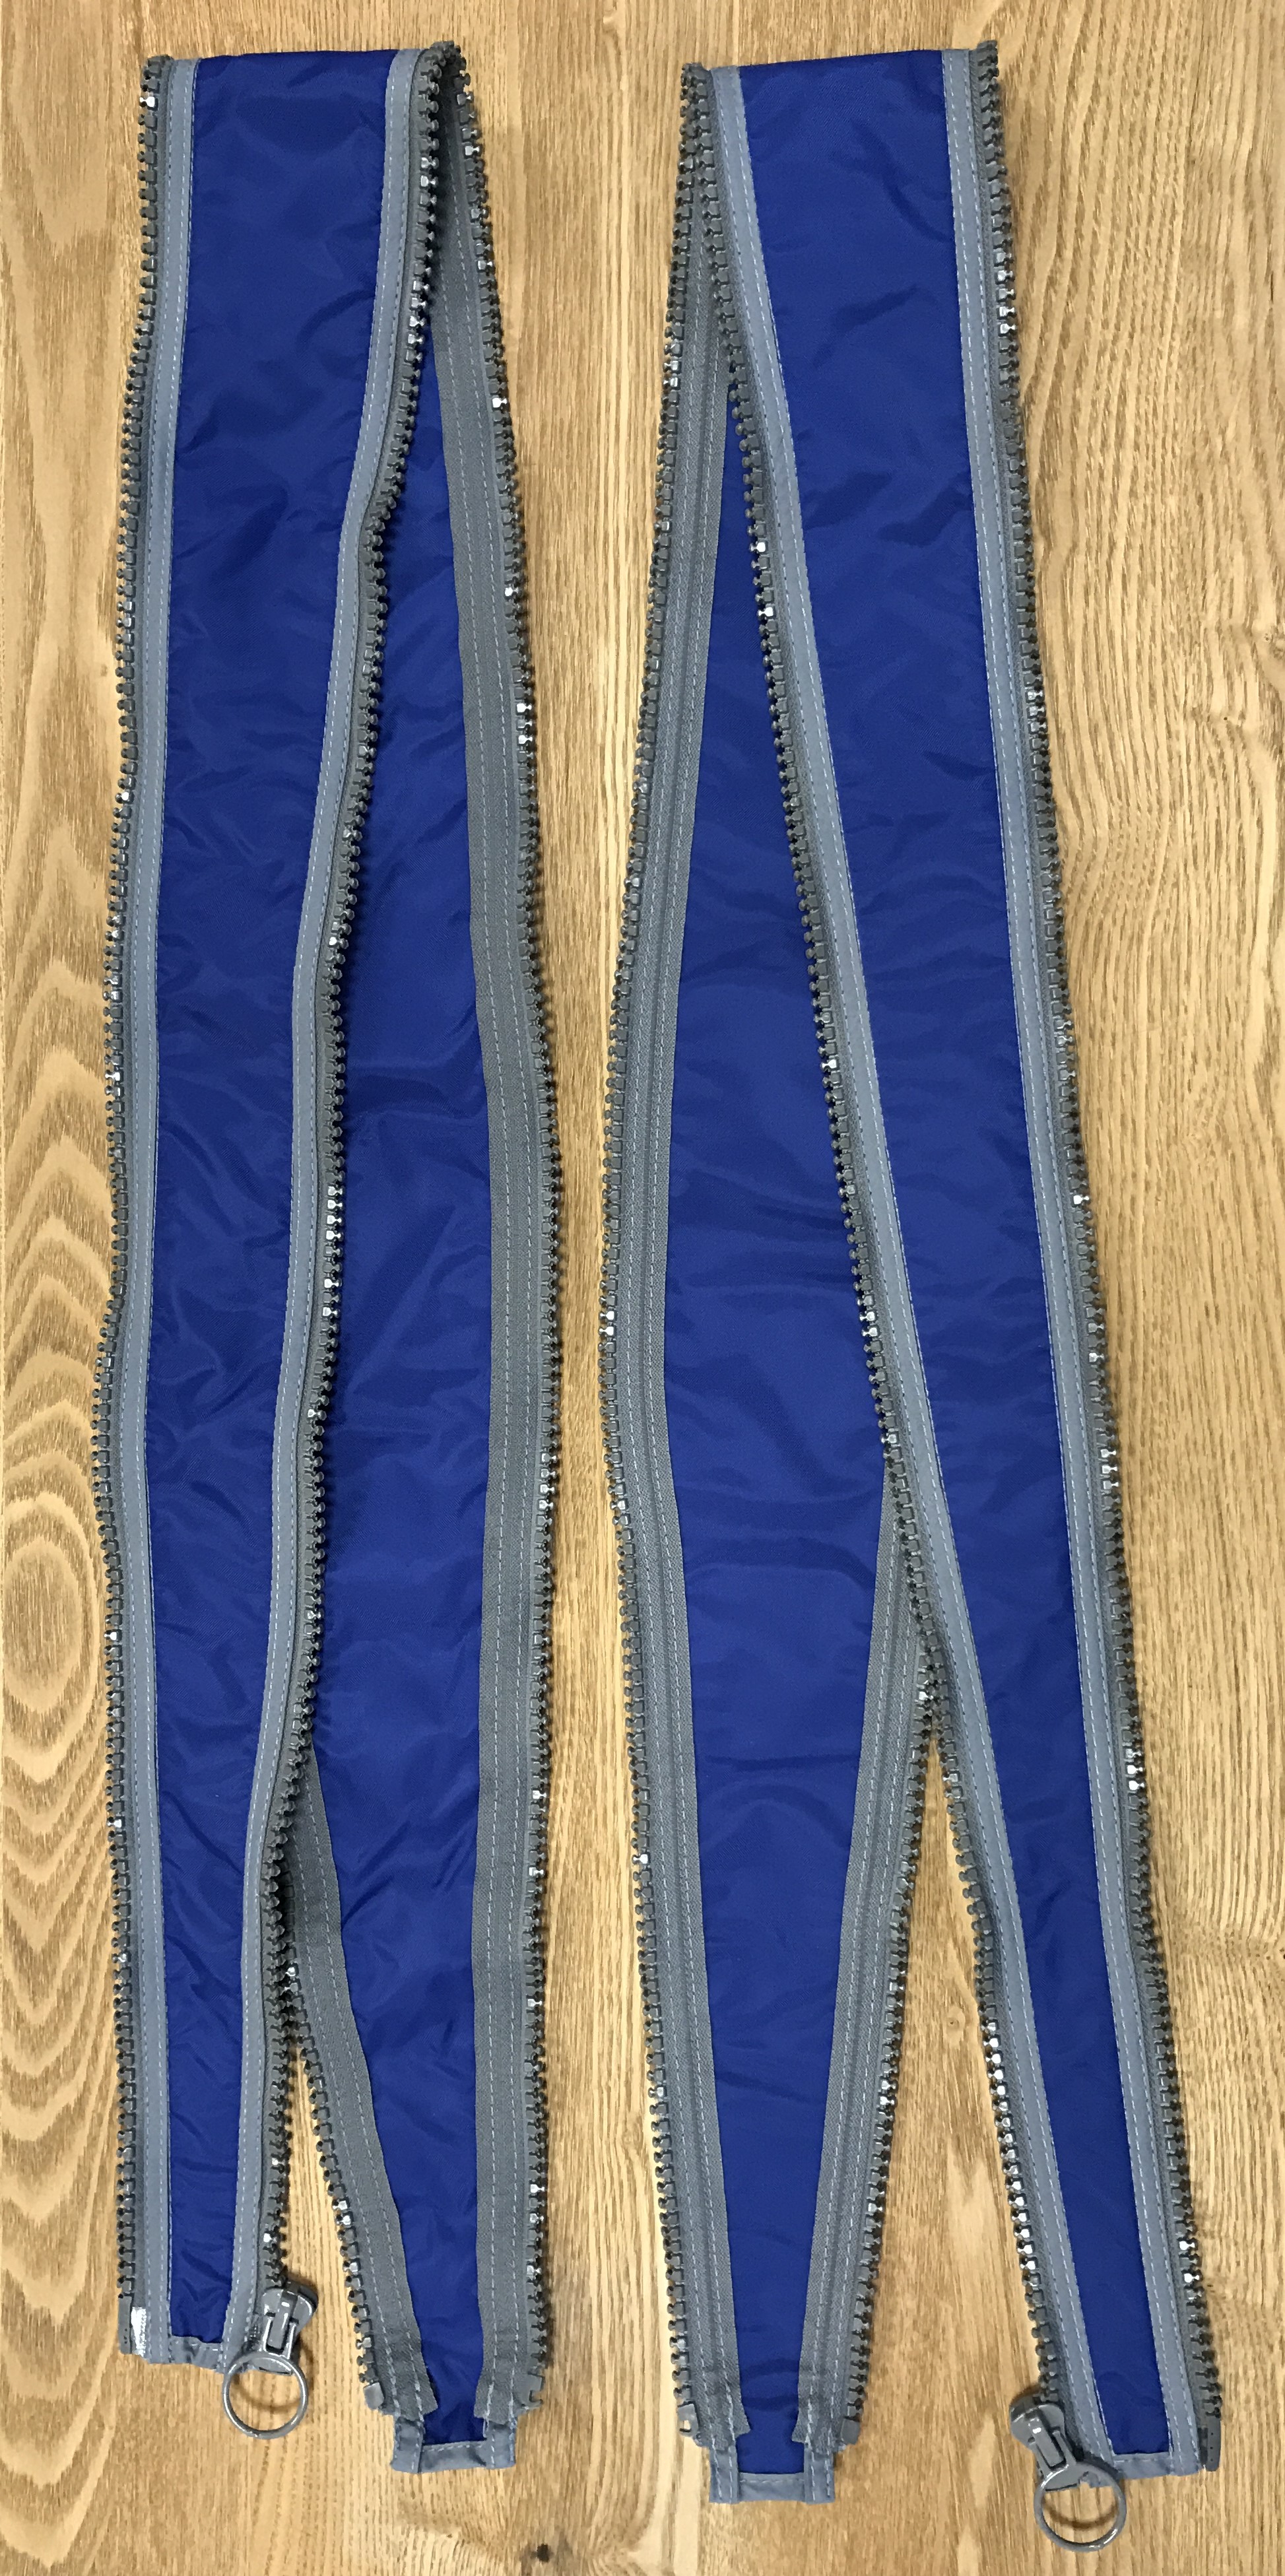 Två långsmala blå tygstycken med dragkedjor i sidorna.